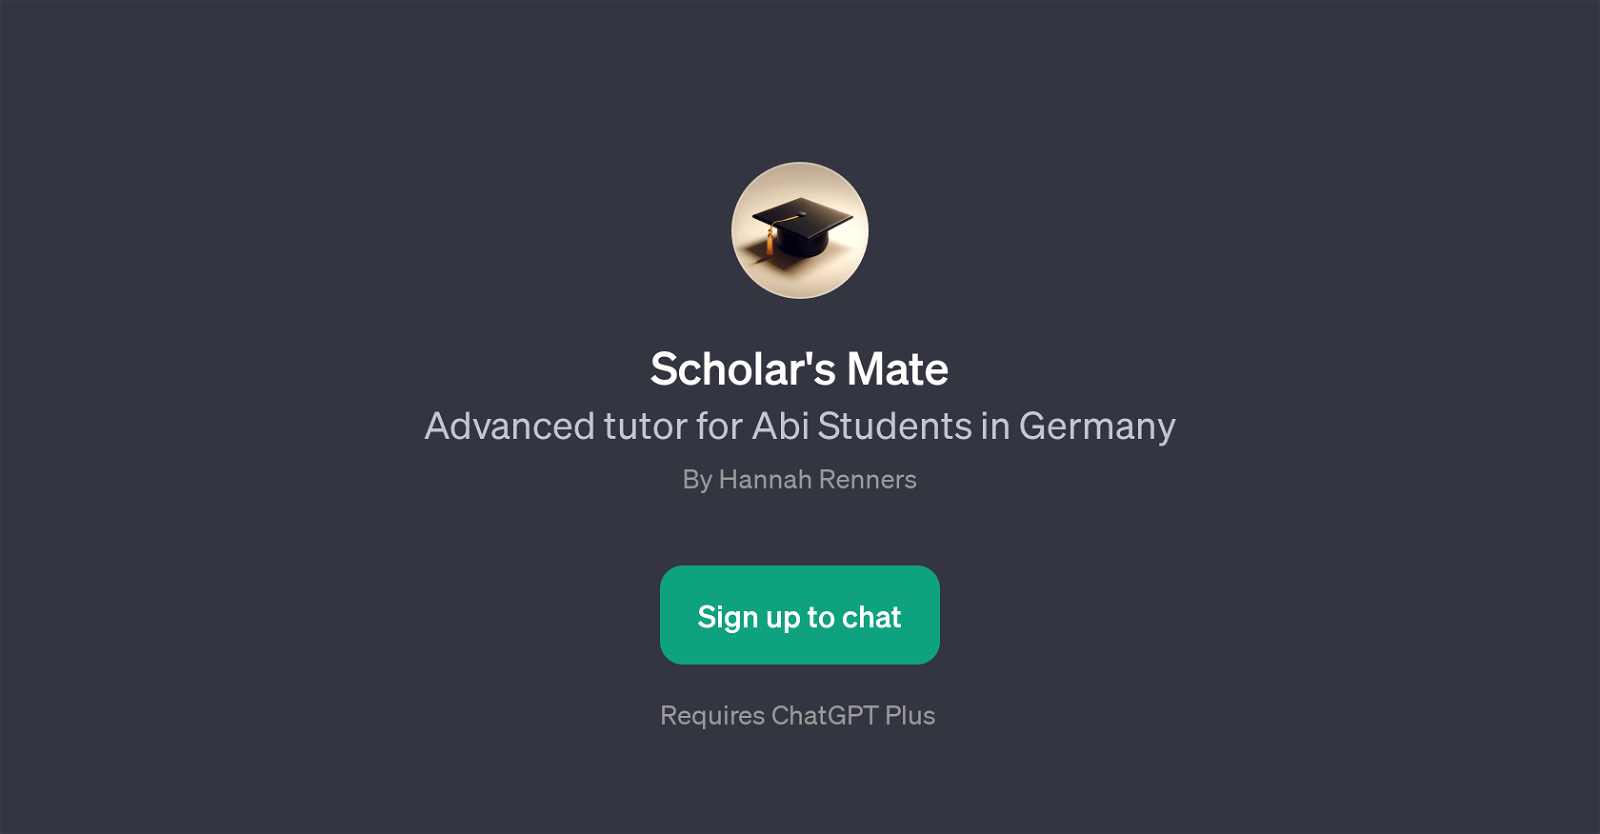 Scholar's Mate website